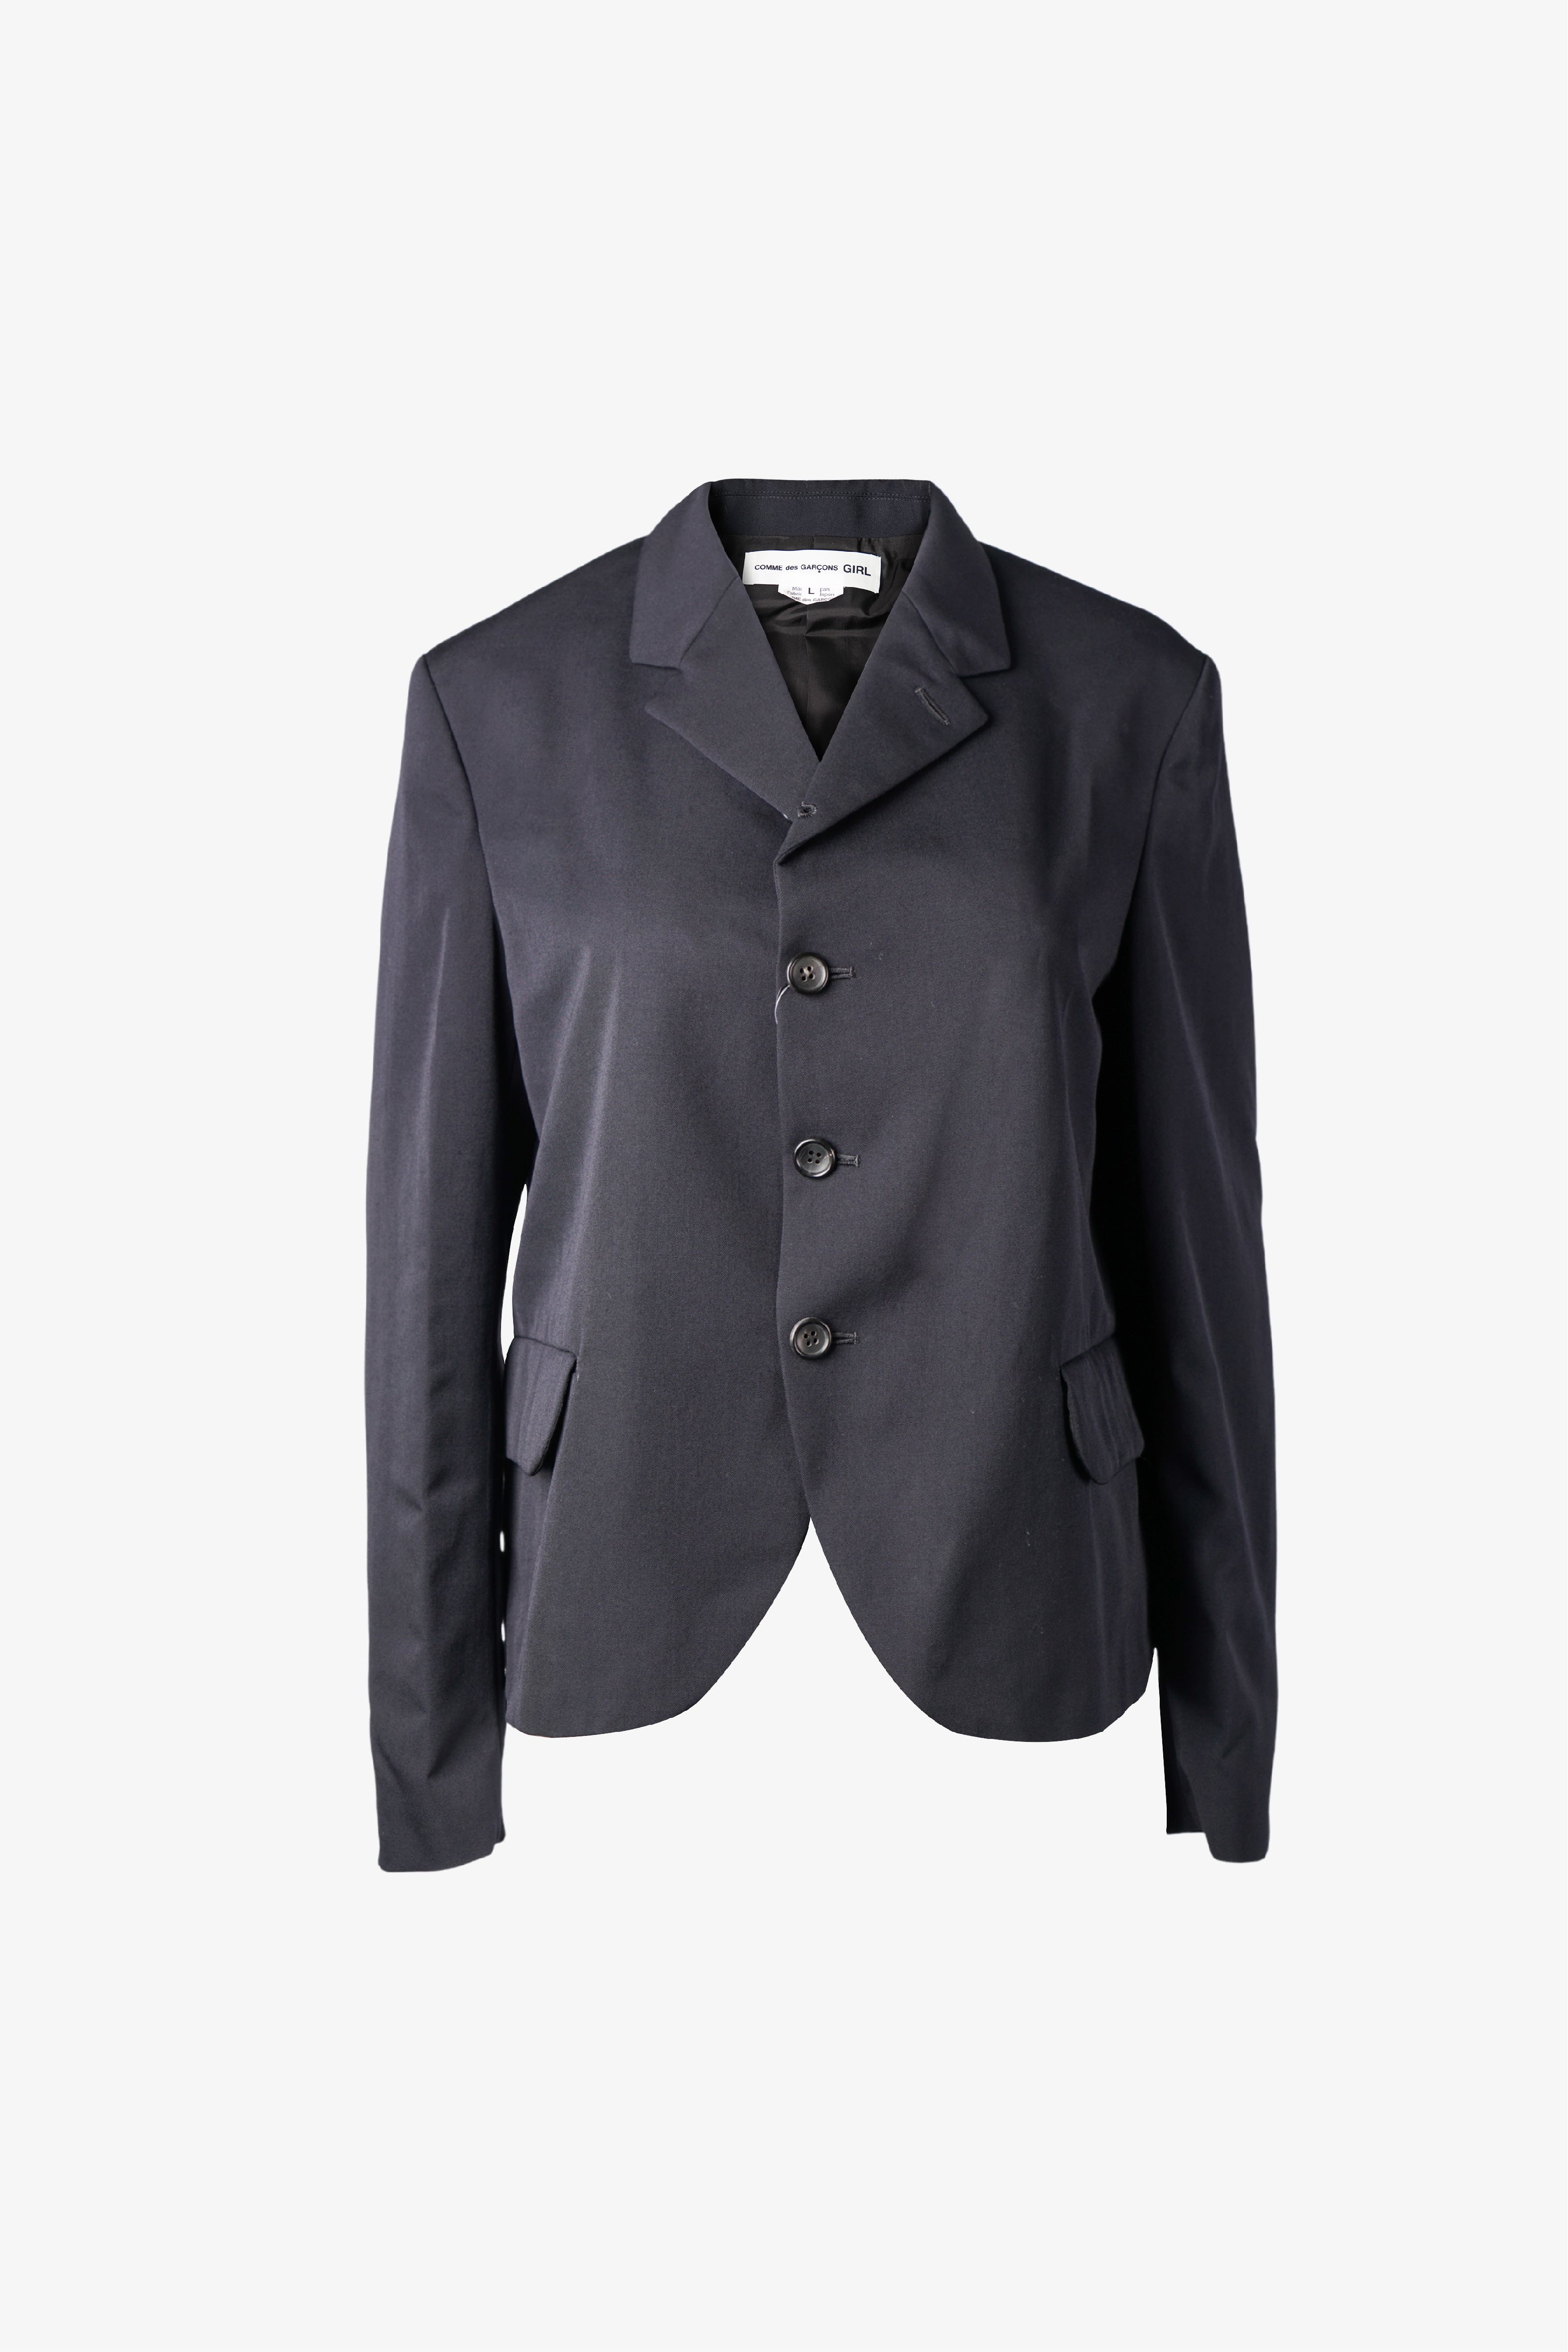 Selectshop FRAME - COMME DES GARÇONS GIRL Jacket Outerwear Dubai